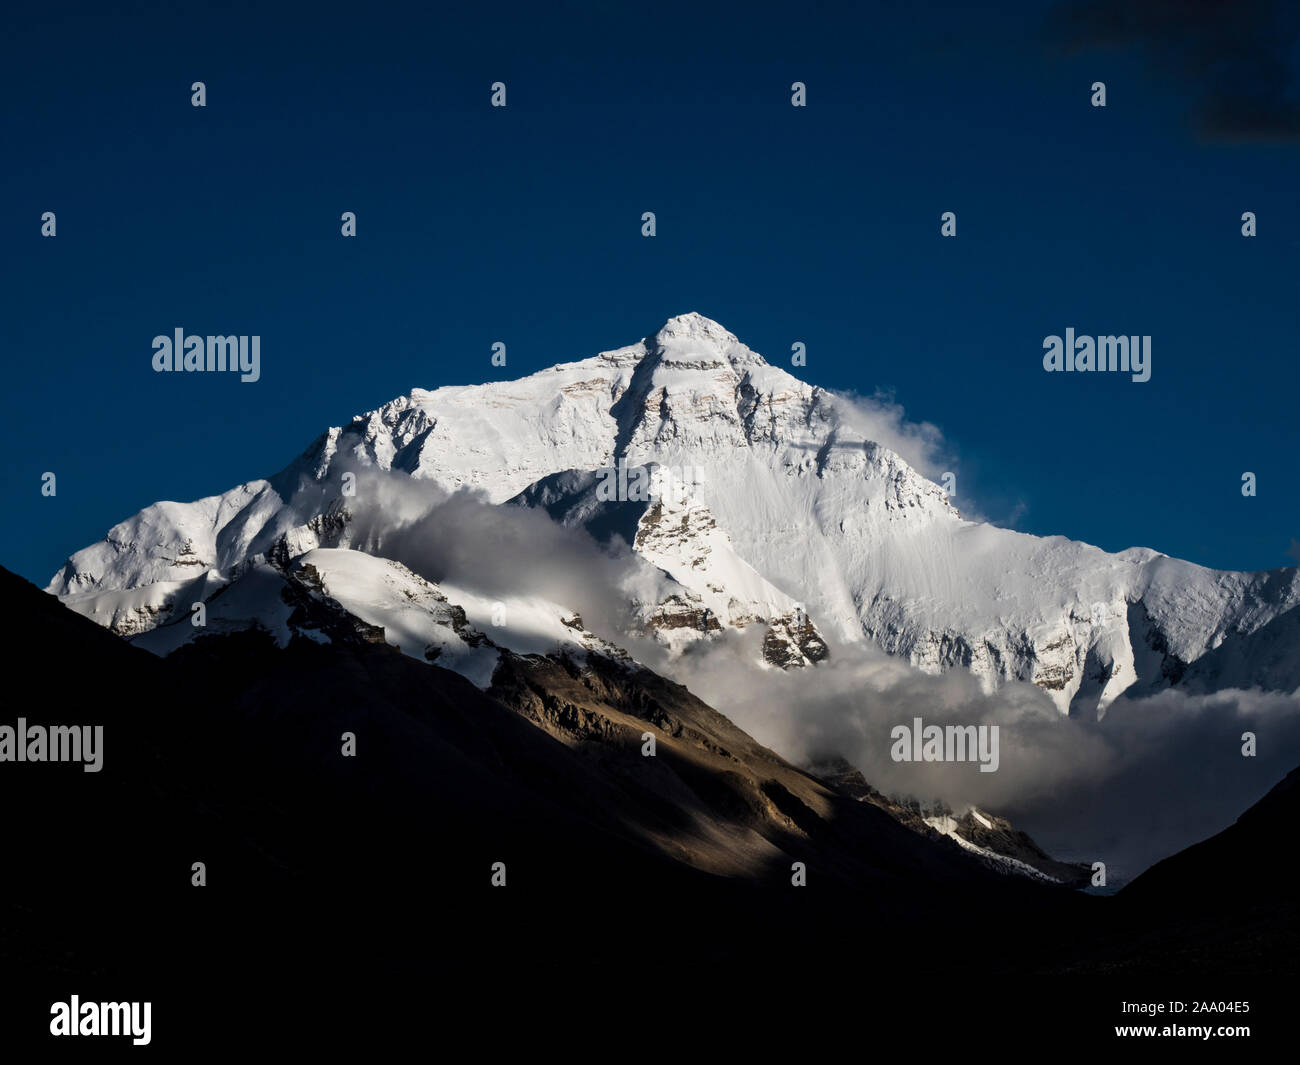 Everest north face immagini e fotografie stock ad alta risoluzione - Alamy